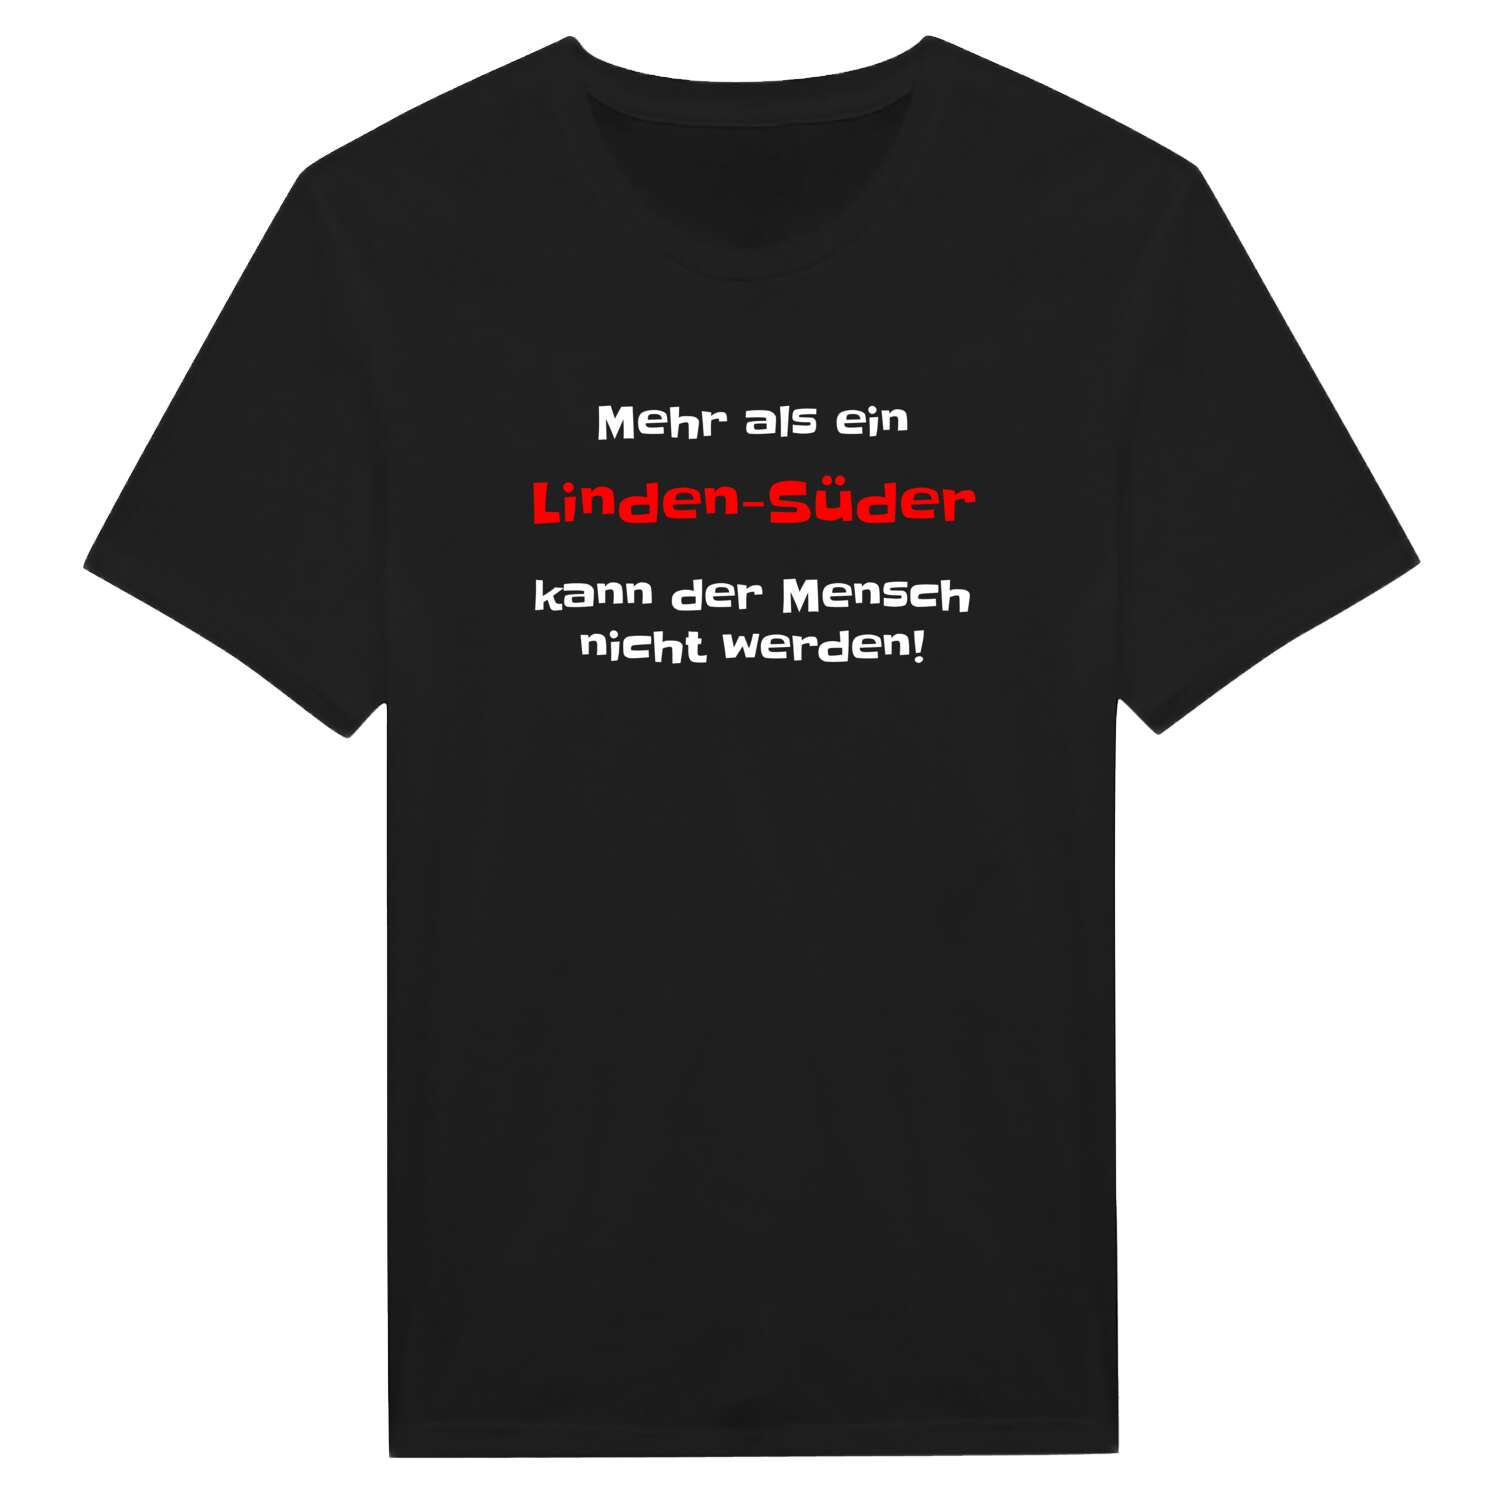 Linden-Süd T-Shirt »Mehr als ein«